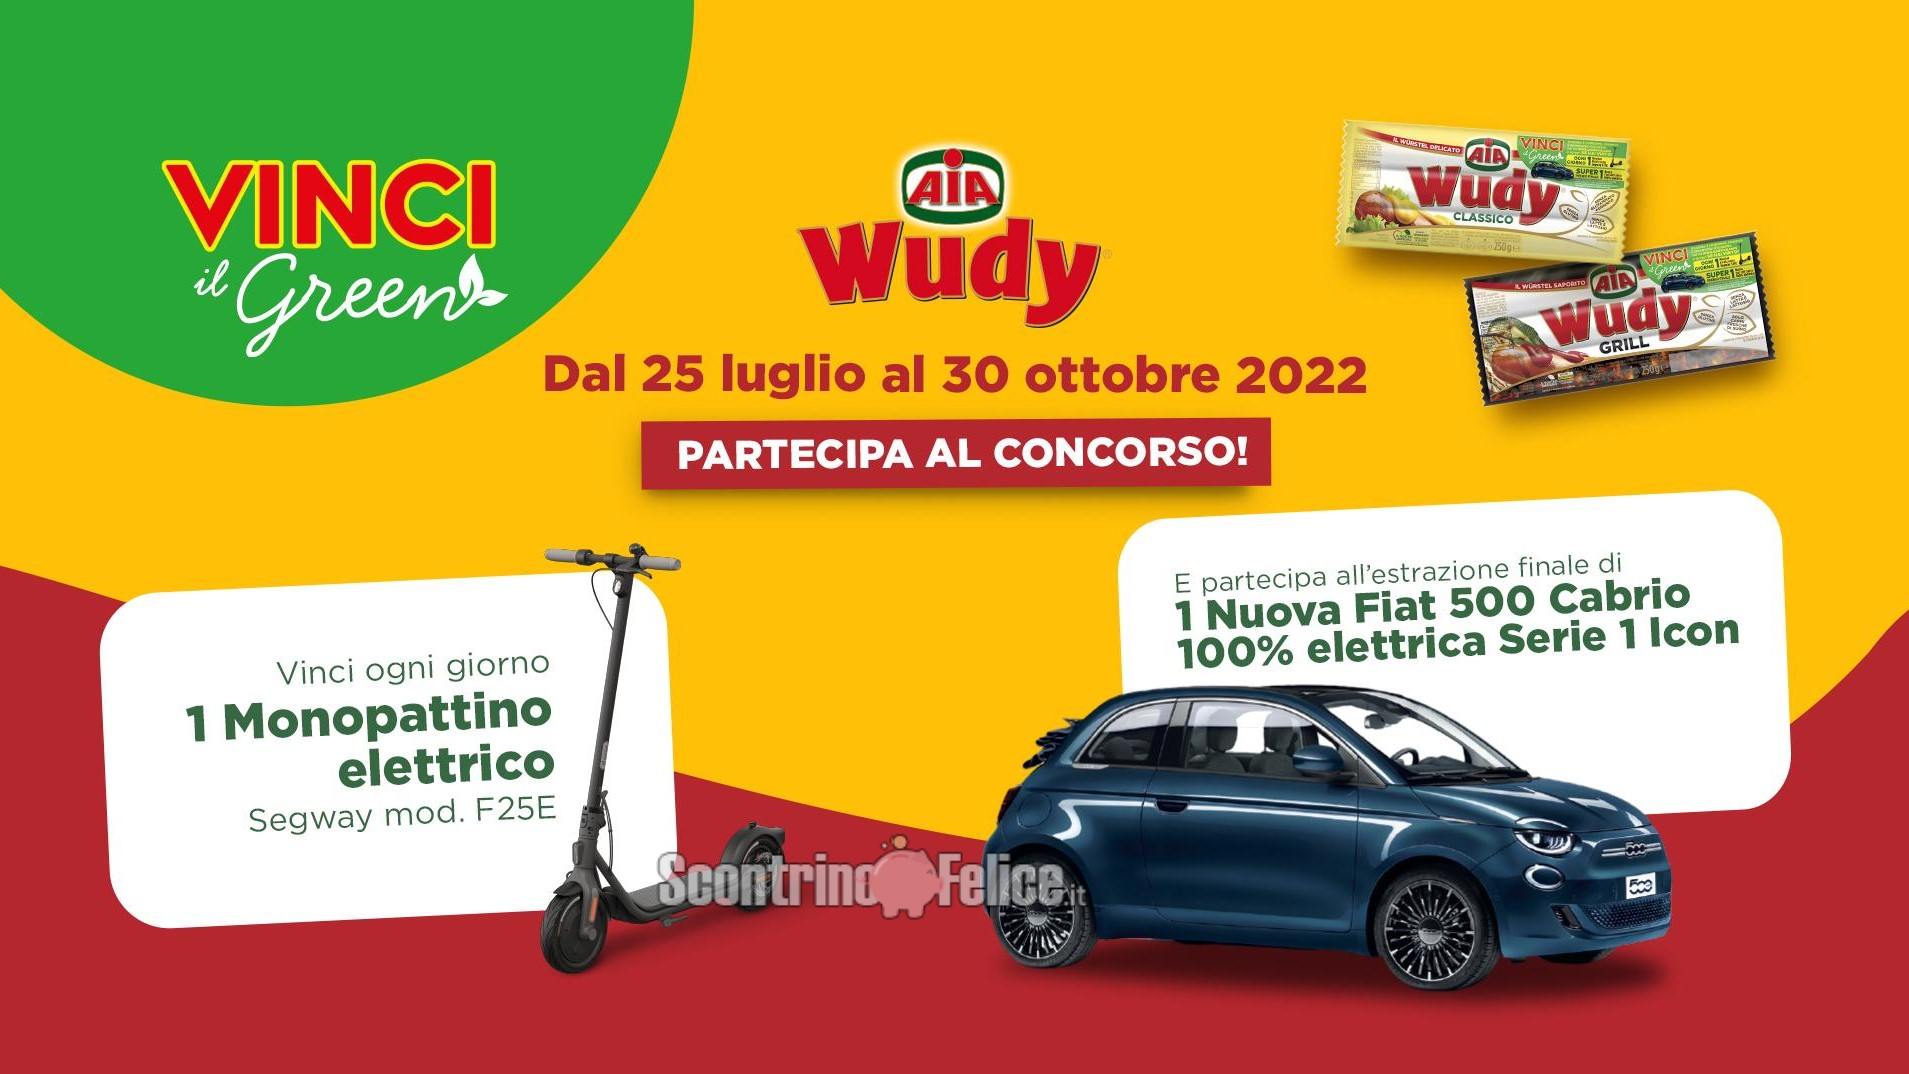 Concorso Wudy Aia 2022: in palio 63 Monopattini Elettrici Segway e 1 automobile Fiat 500 Cabrio elettrica